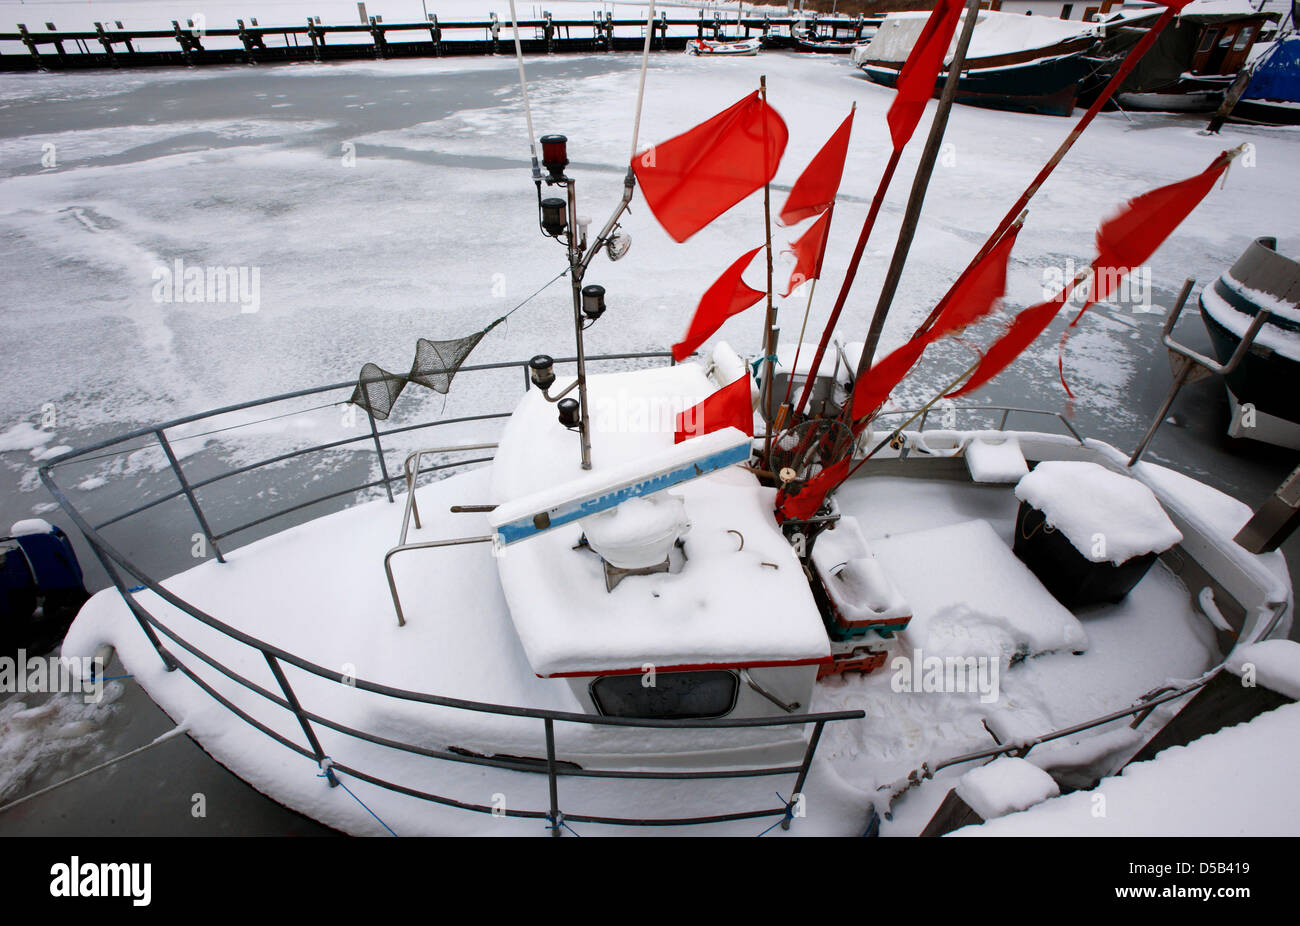 Ein schneebedeckter Fischkutter liegt am Montag (04.05.2010) im vereisten Hafen von Kirchdorf auf der Ostseeinsel Poel. Frost, Schnee und Eis bestimmen derzeit das Wetter in Norddeutschland.  Foto: Jens Büttner dpa/lmv Stock Photo